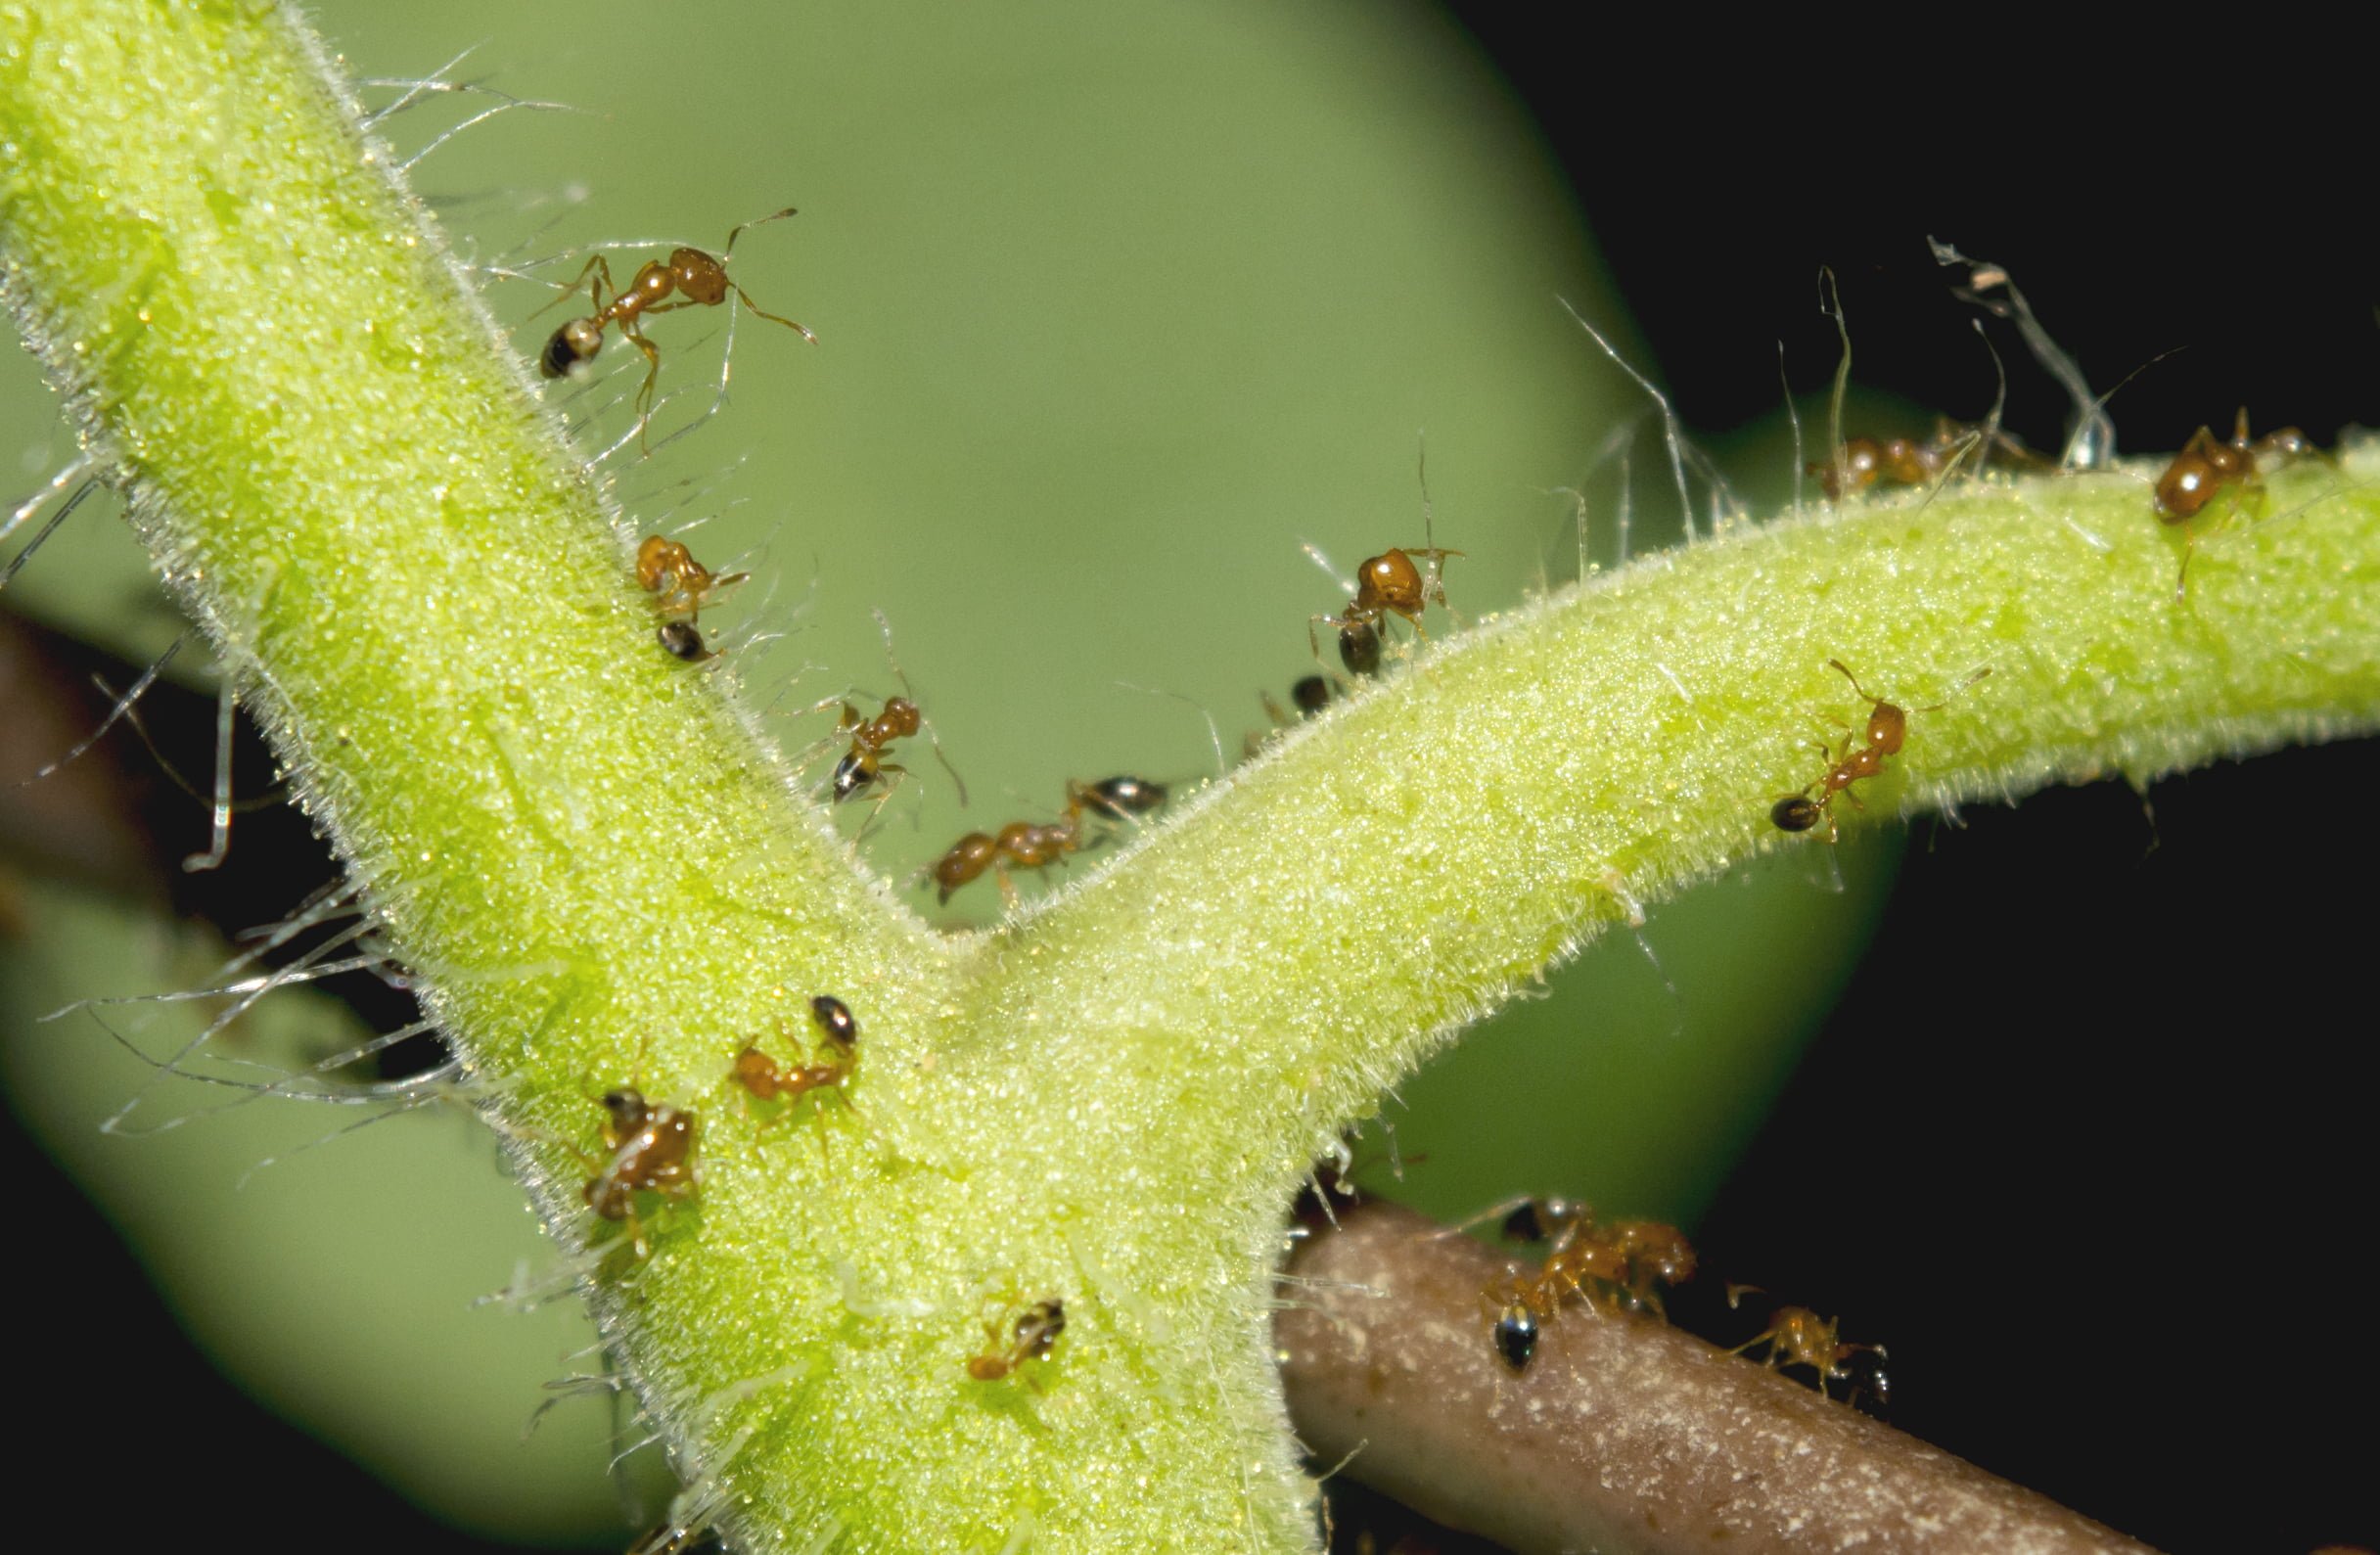 Ants on Tomato Plants